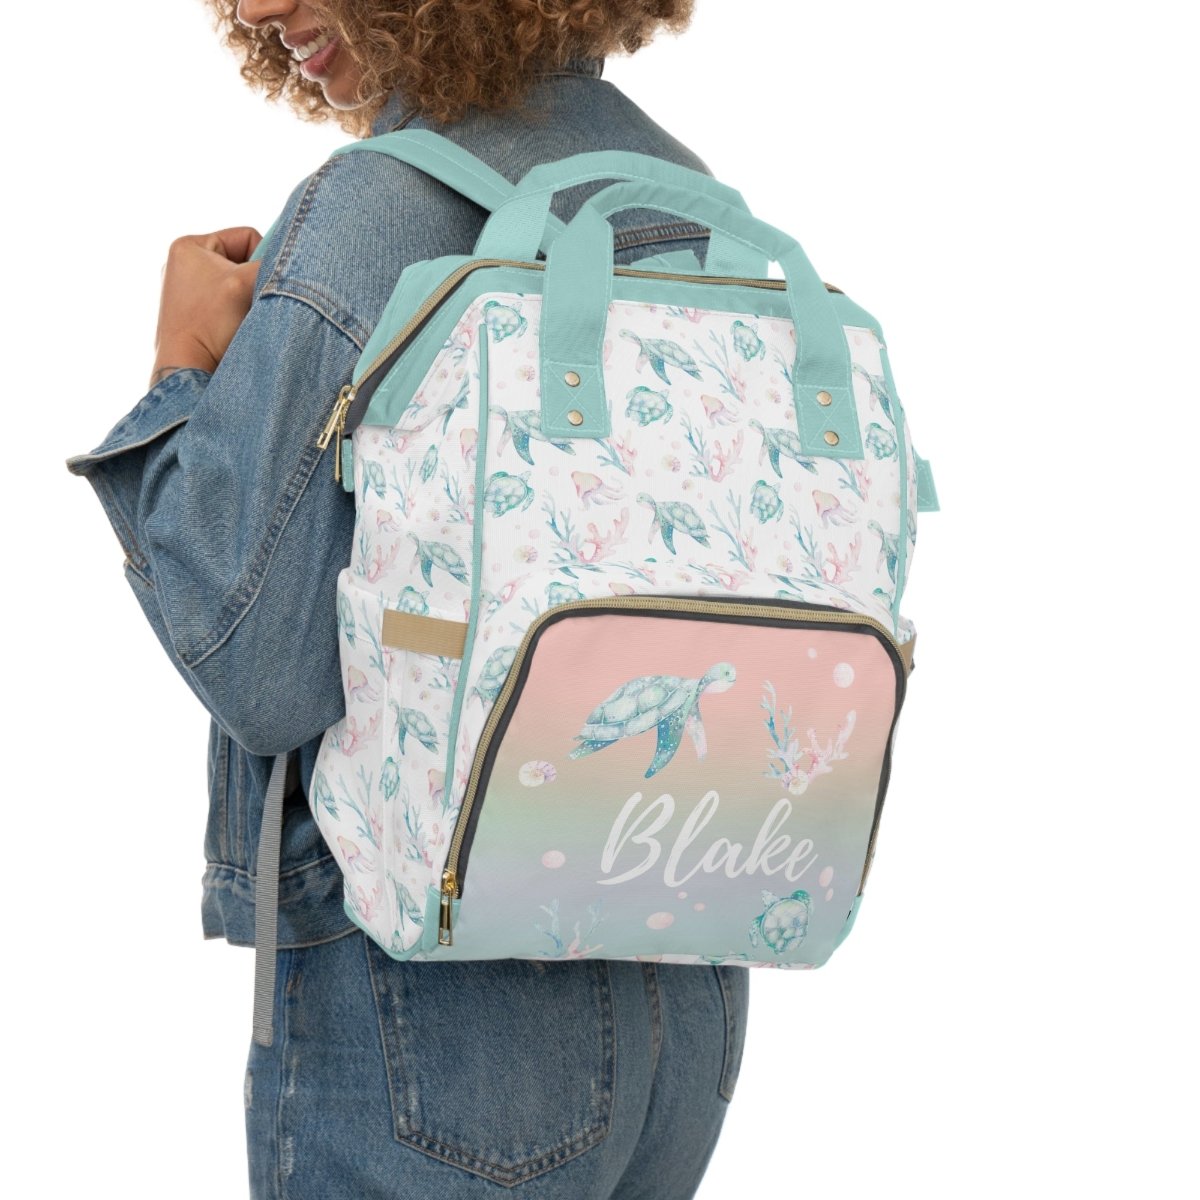 Sweet Sea Turtles Personalized Backpack Diaper Bag - gender_boy, gender_girl, gender_neutral